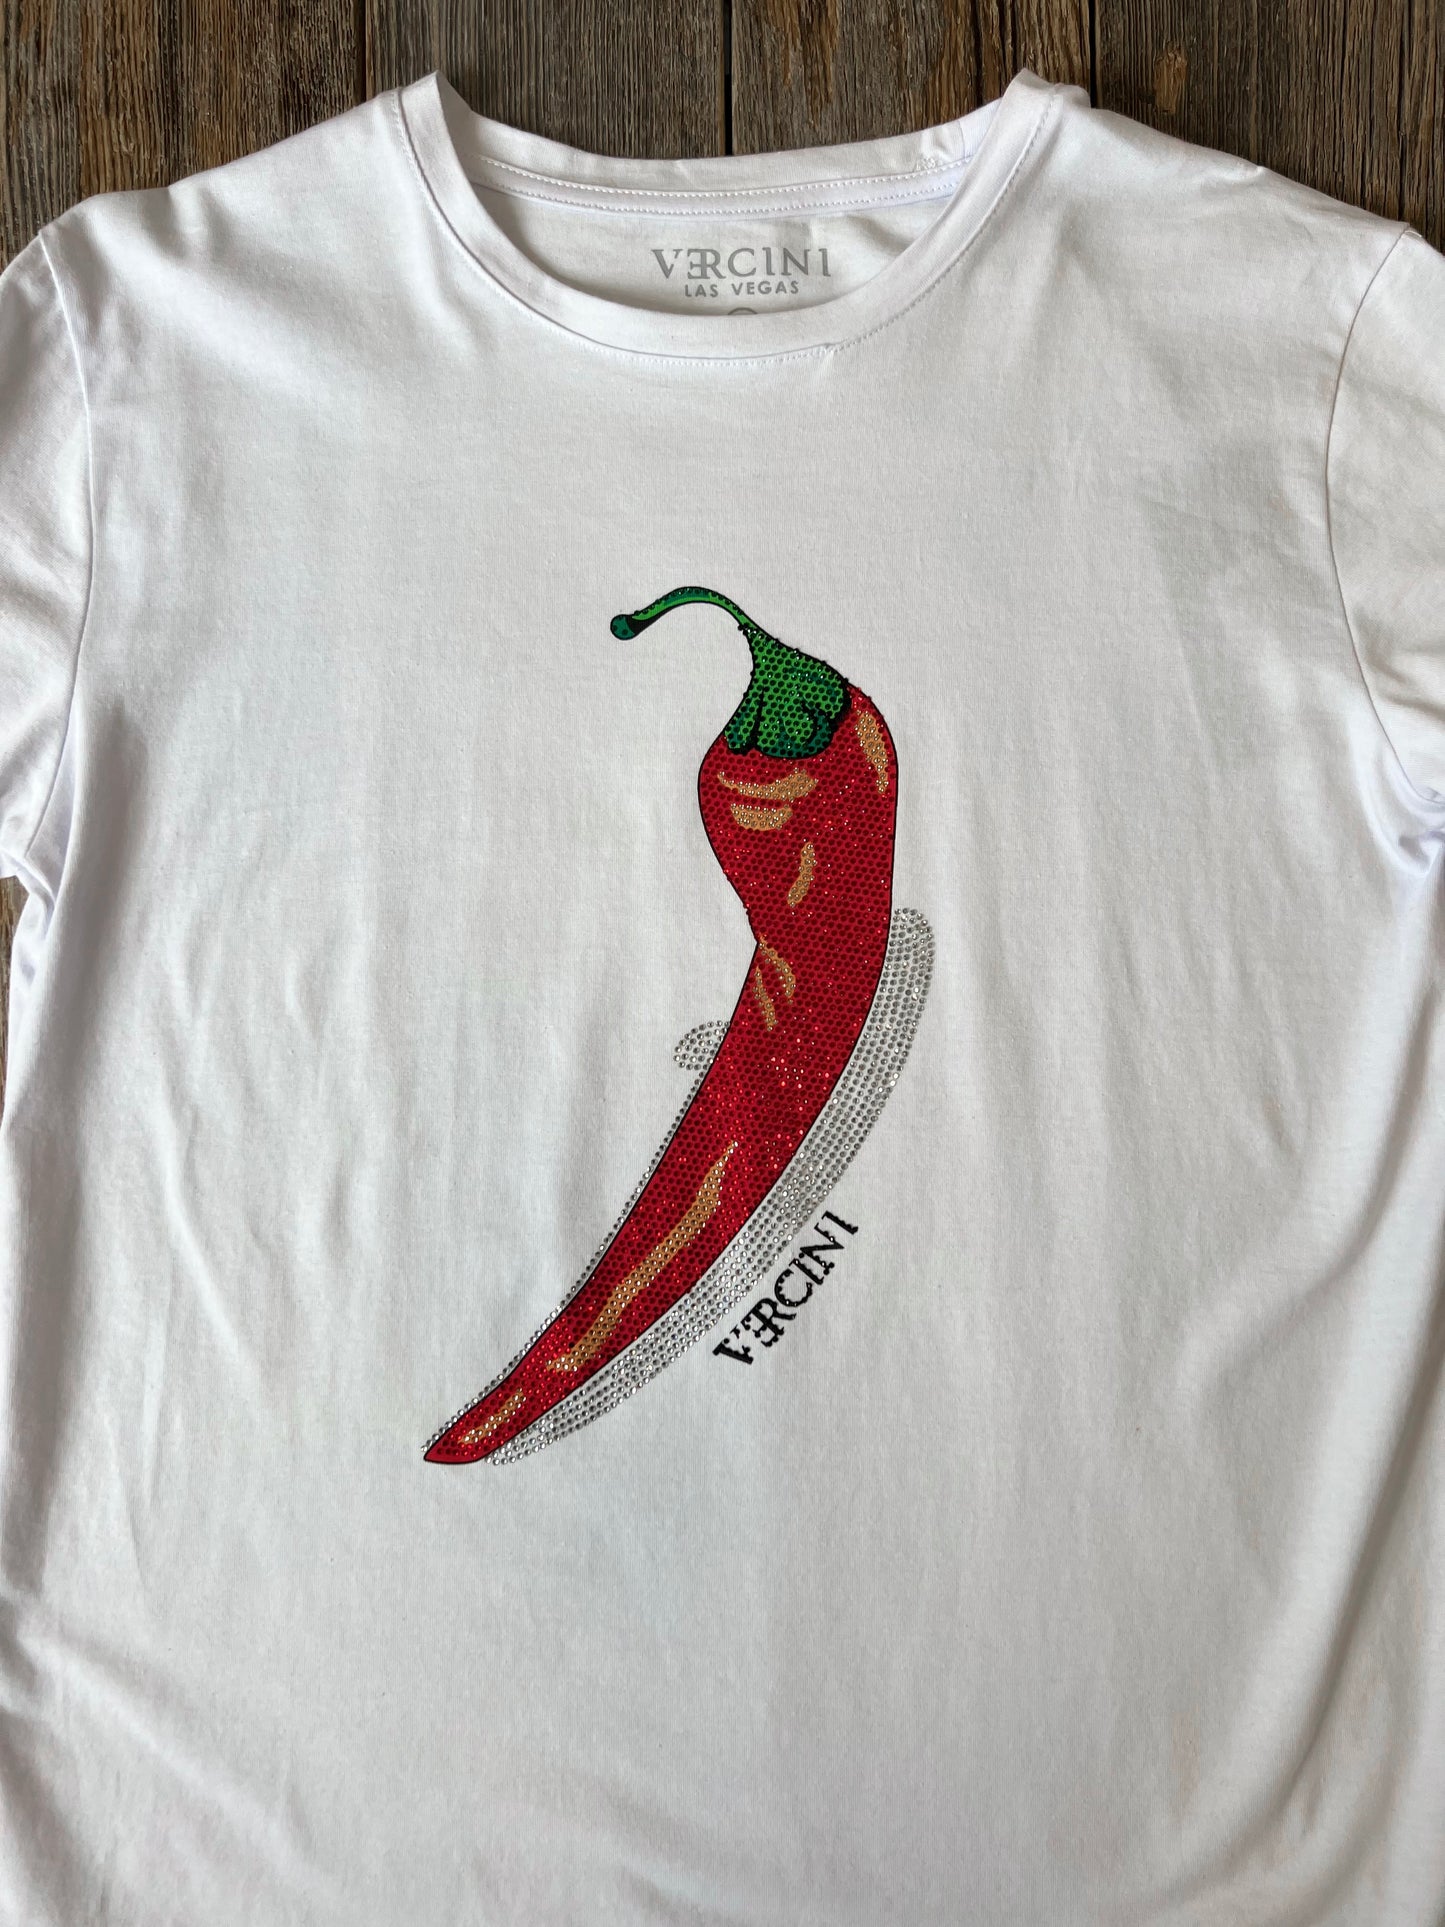 Spice Whisperer Chili Pepper T-Shirt